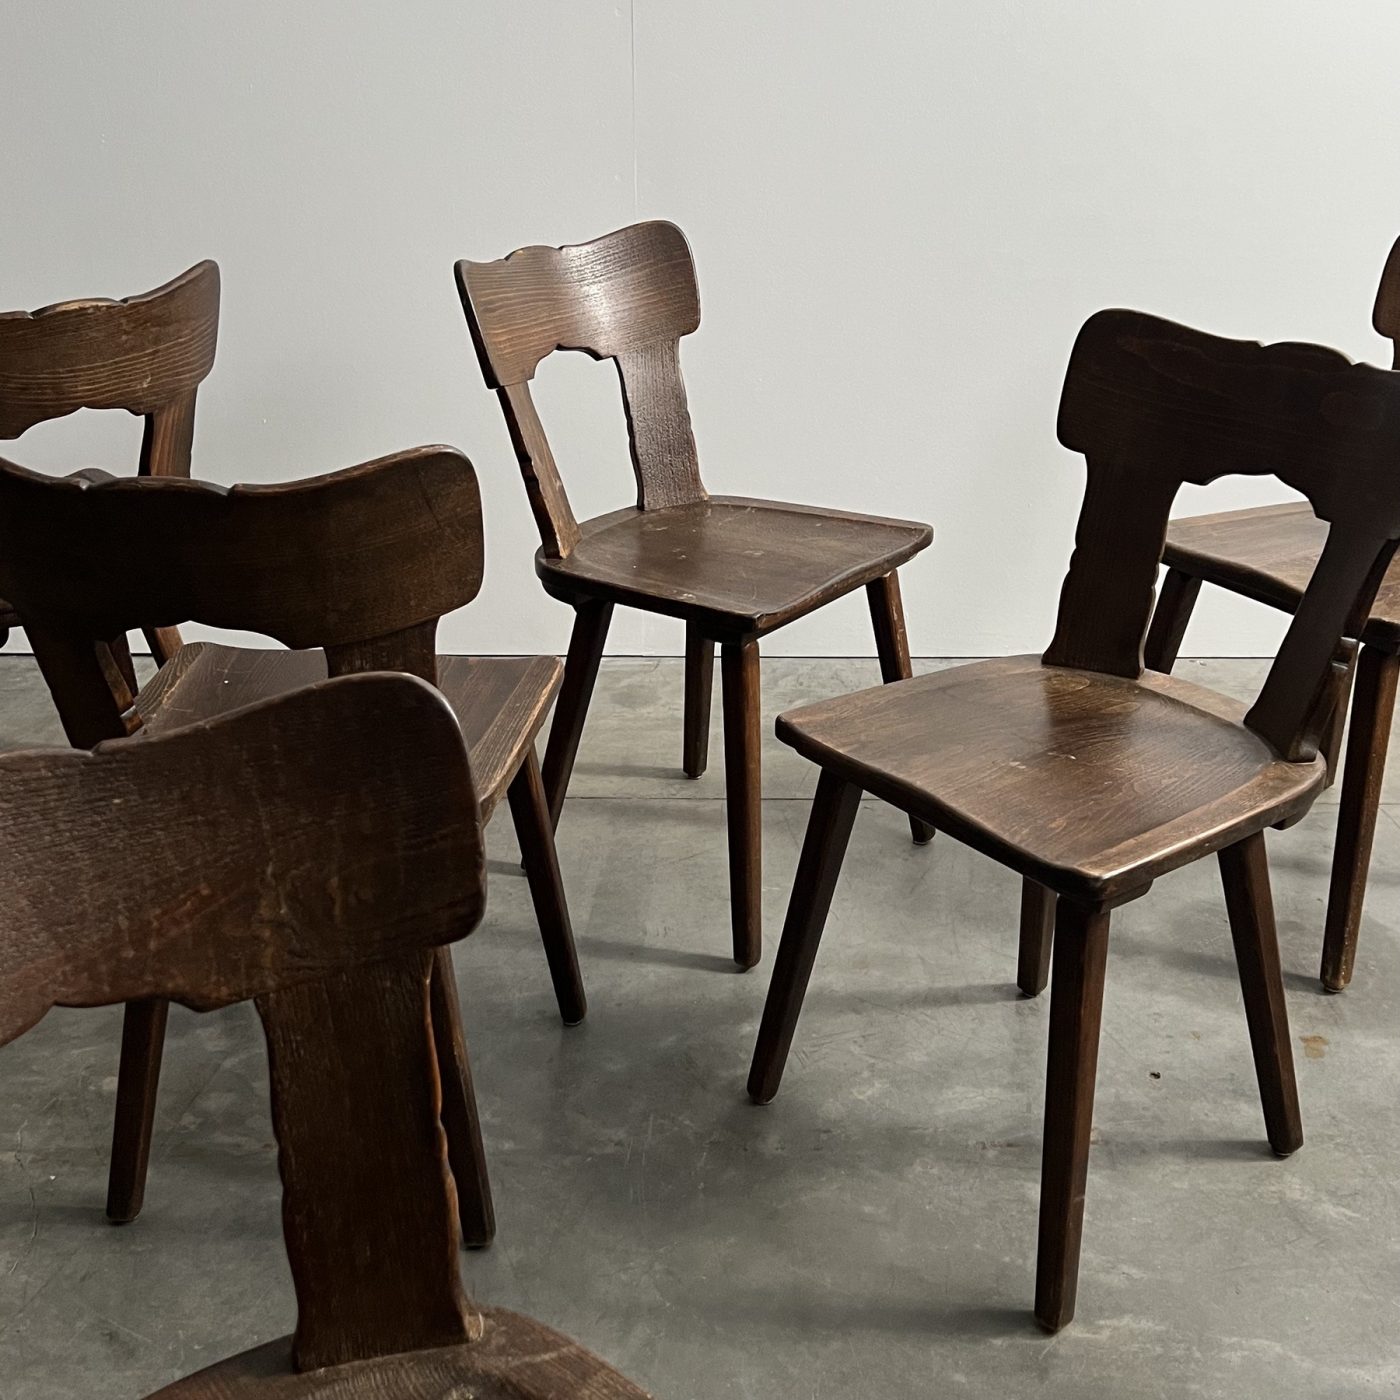 objet-vagabond-bistrot-chairs0001